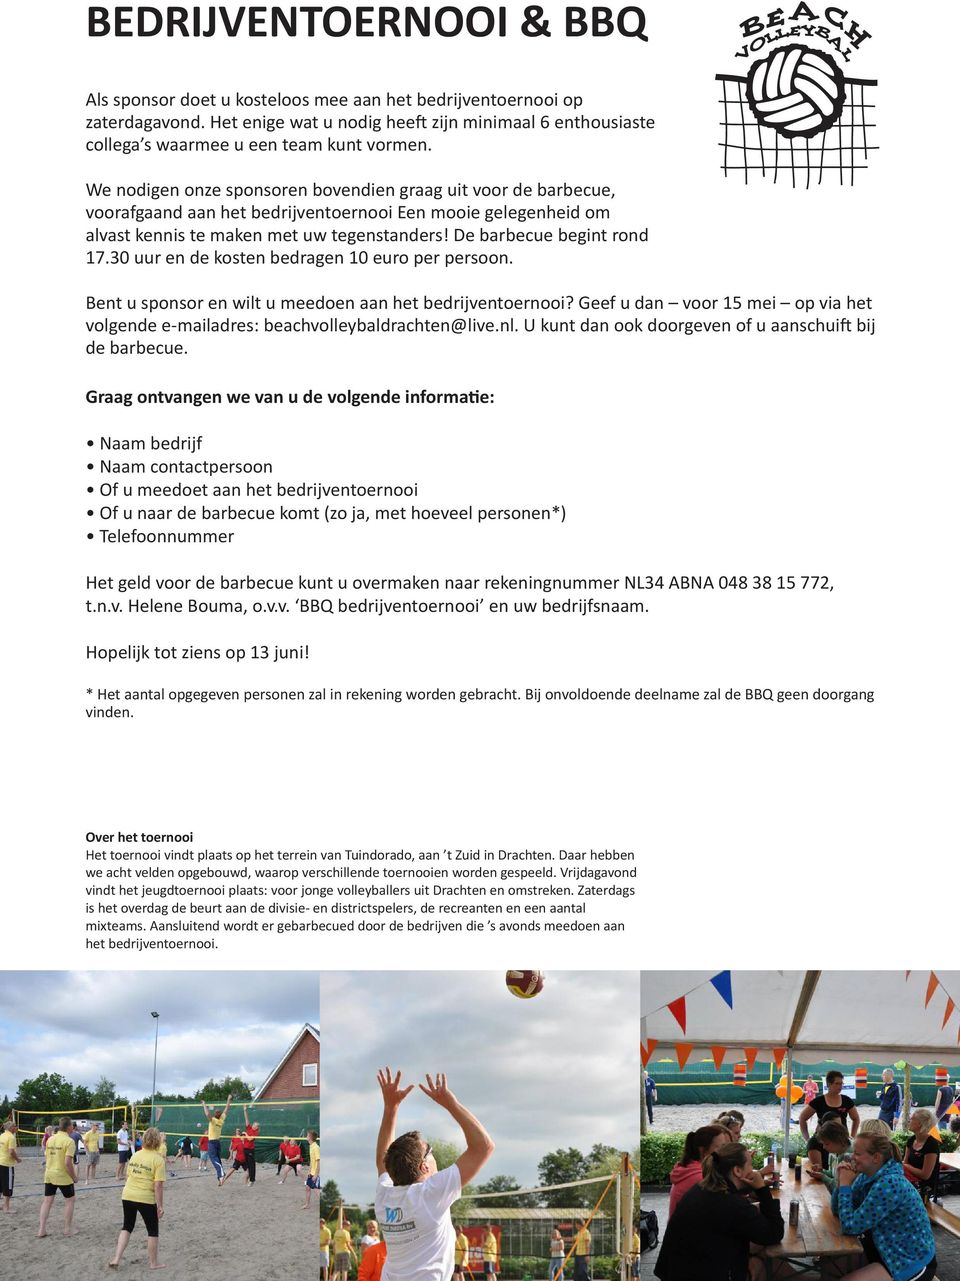 30 uur en de kosten bedragen 10 euro per persoon. Bent u sponsor en wilt u meedoen aan het bedrijventoernooi? Geef u dan voor 15 mei op via het volgende e-mailadres: beachvolleybaldrachten@live.nl.